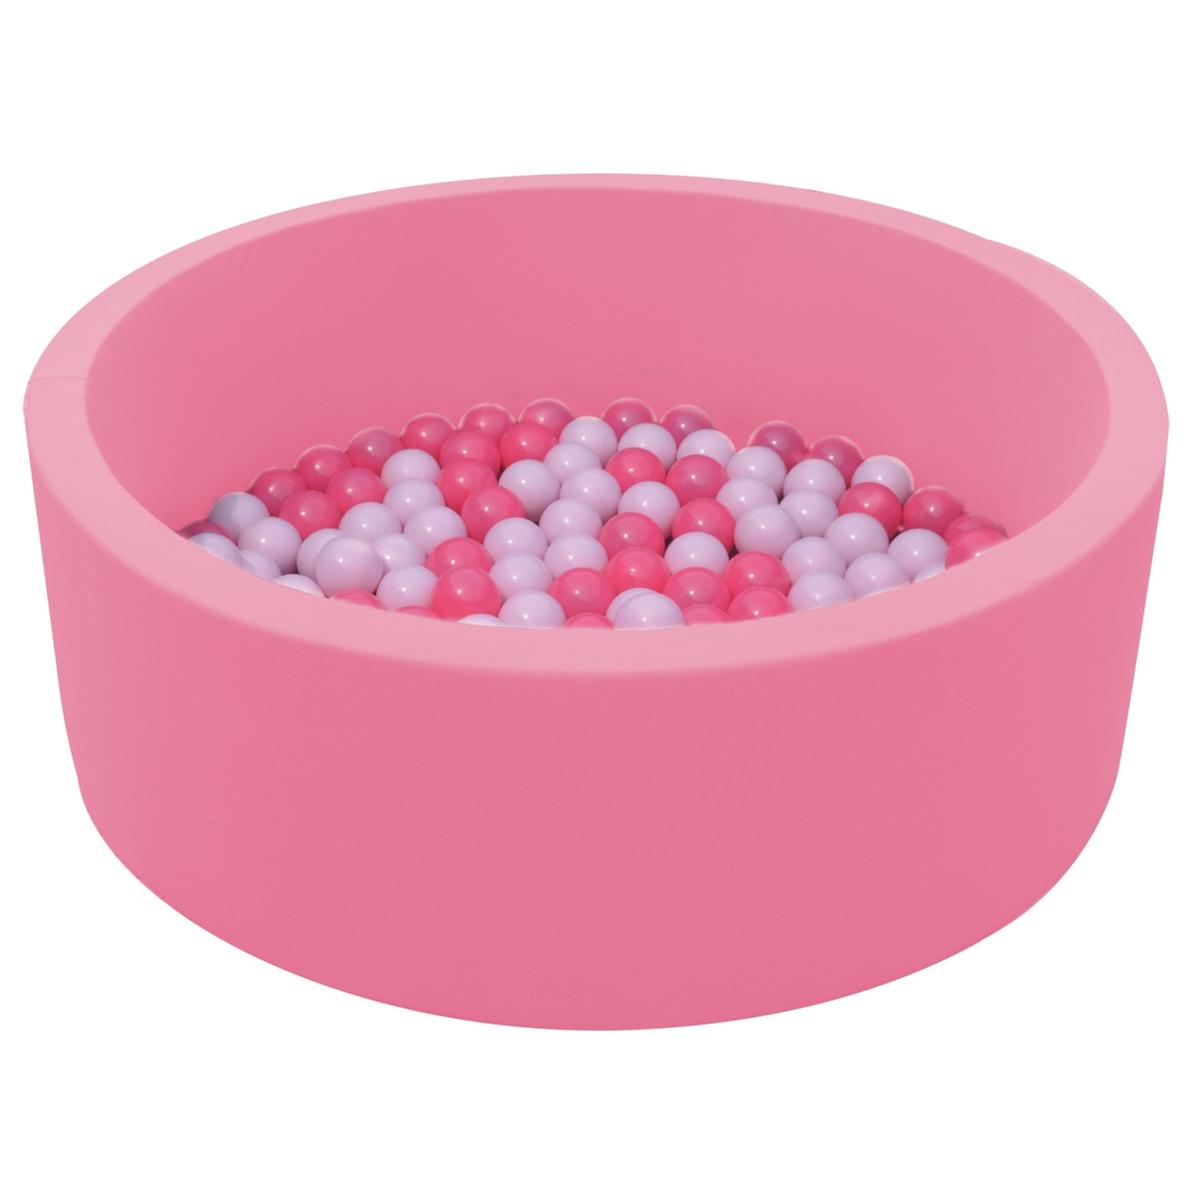 Piscina redonda rosa con 100 bolas | De Interior y | Toys"R"Us España